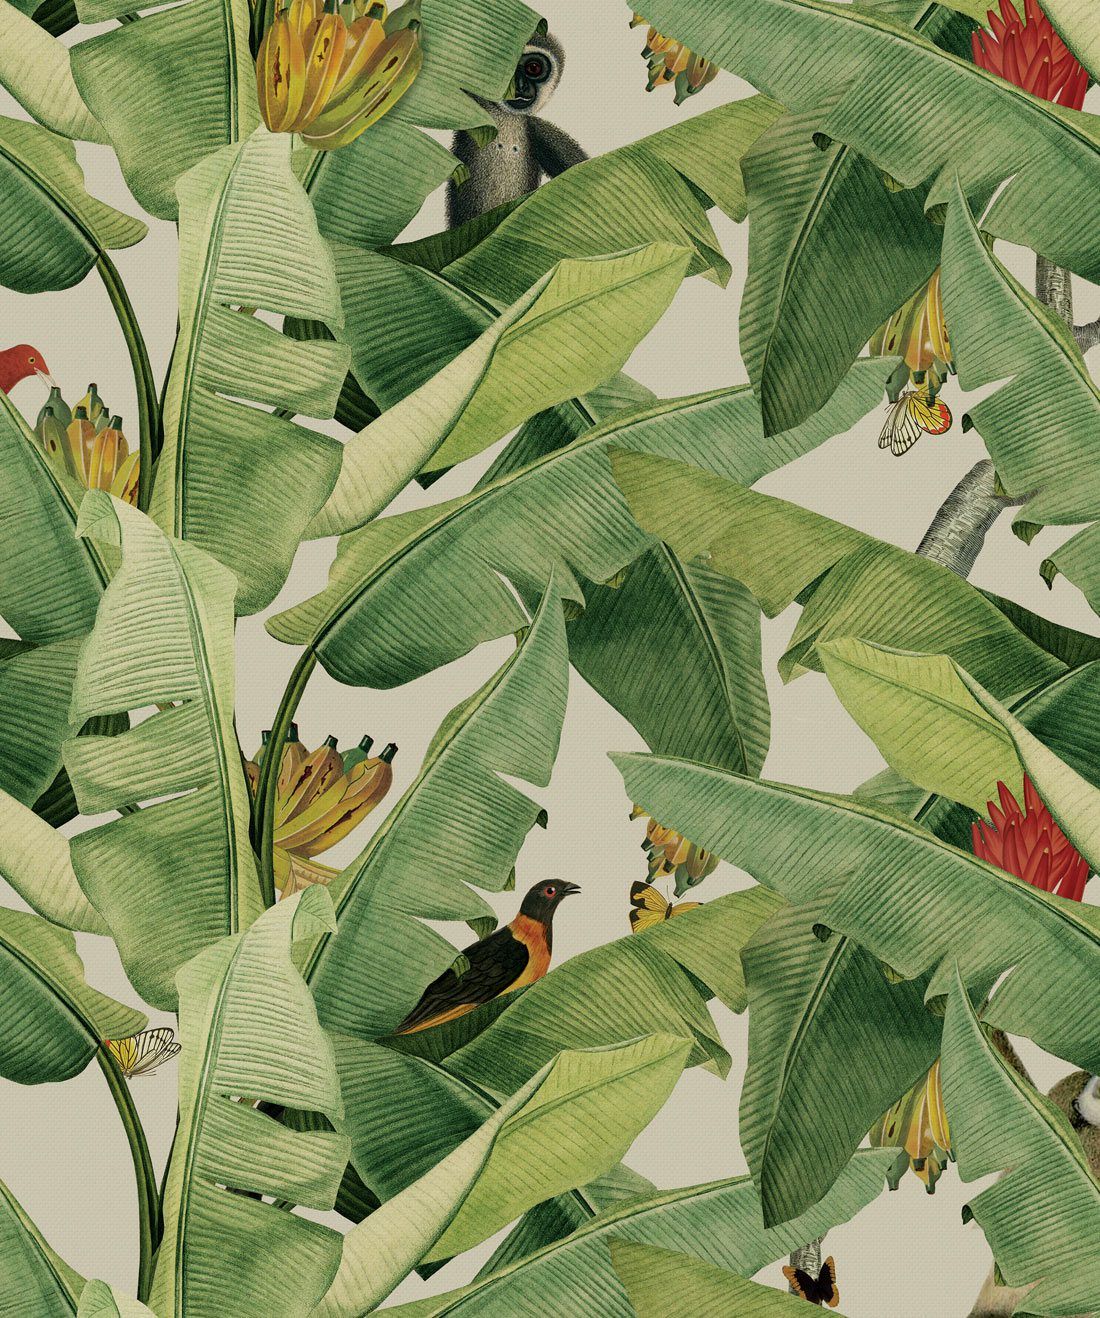 Jungle Fever Wallpaper, featuring a banana leaf motif